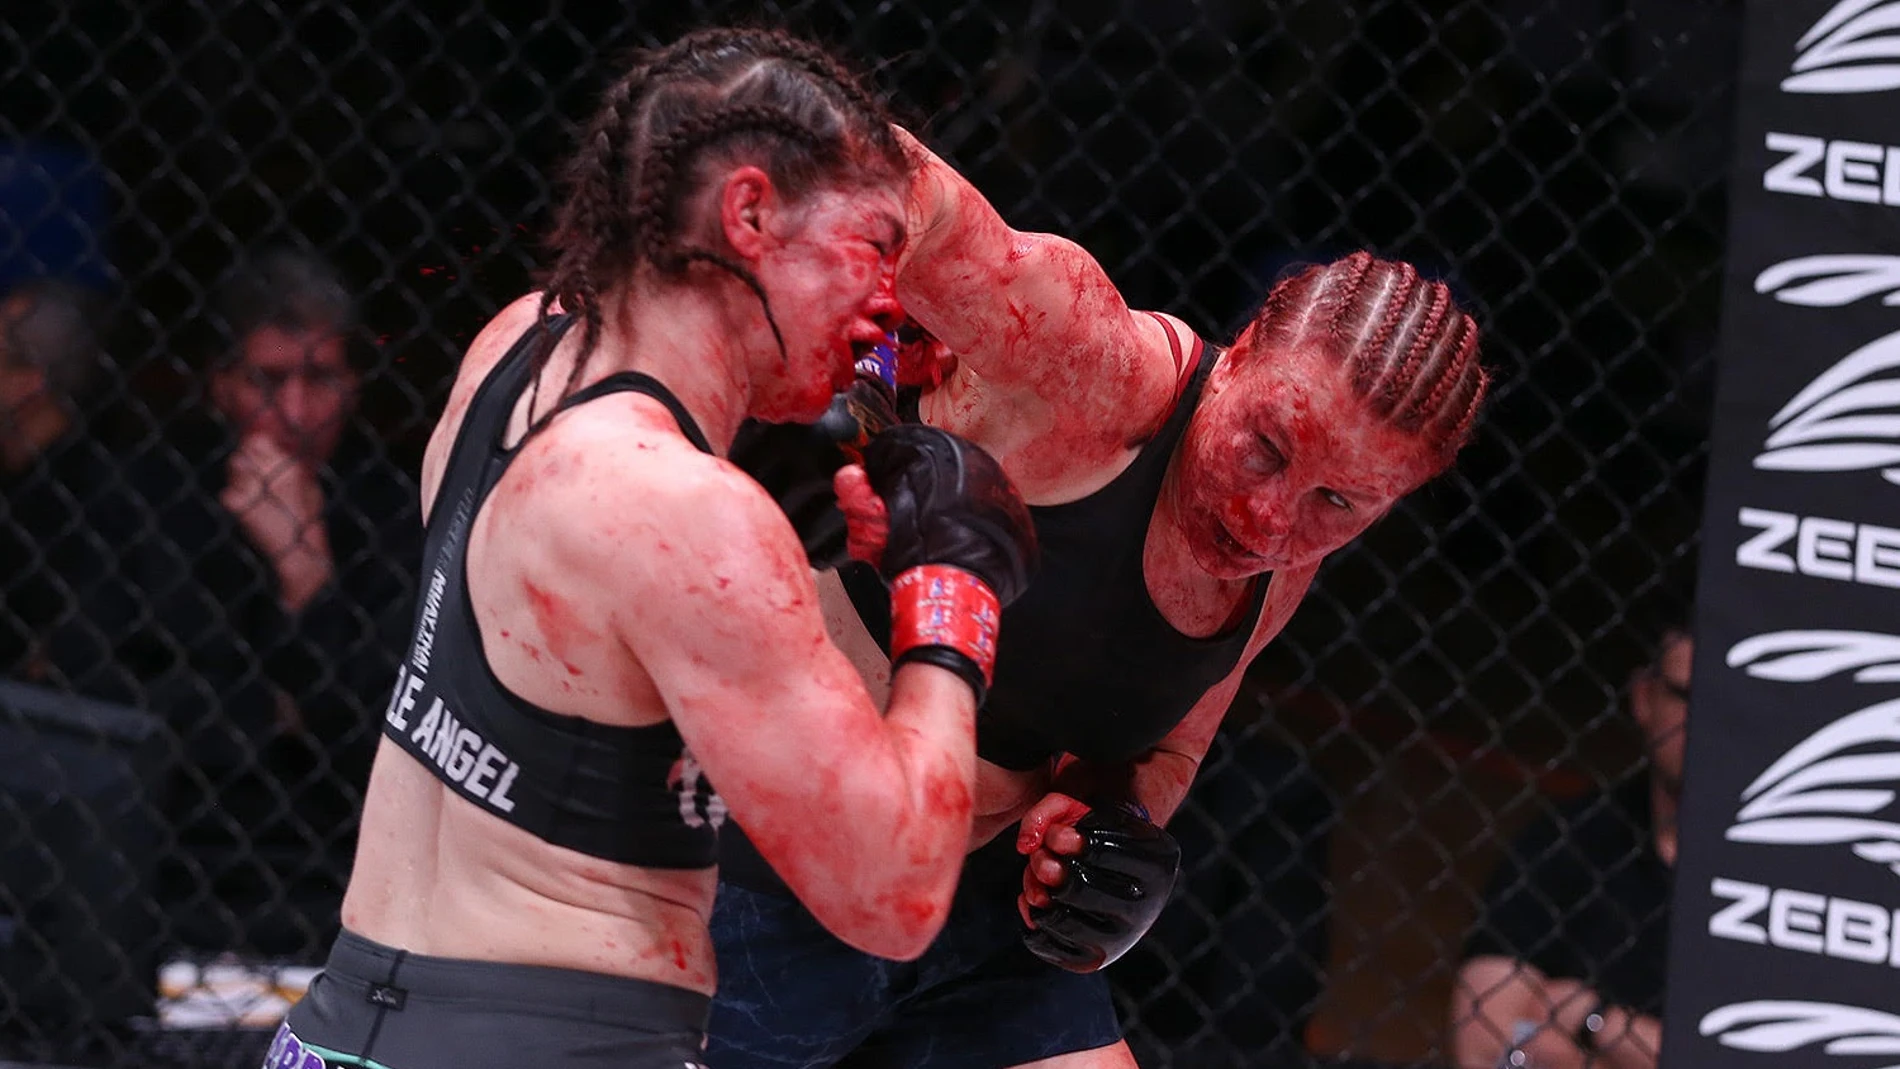 Monet este medio Un baño de sangre: una luchadora de MMA sufre un brutal corte en la cara  tras un puñetazo